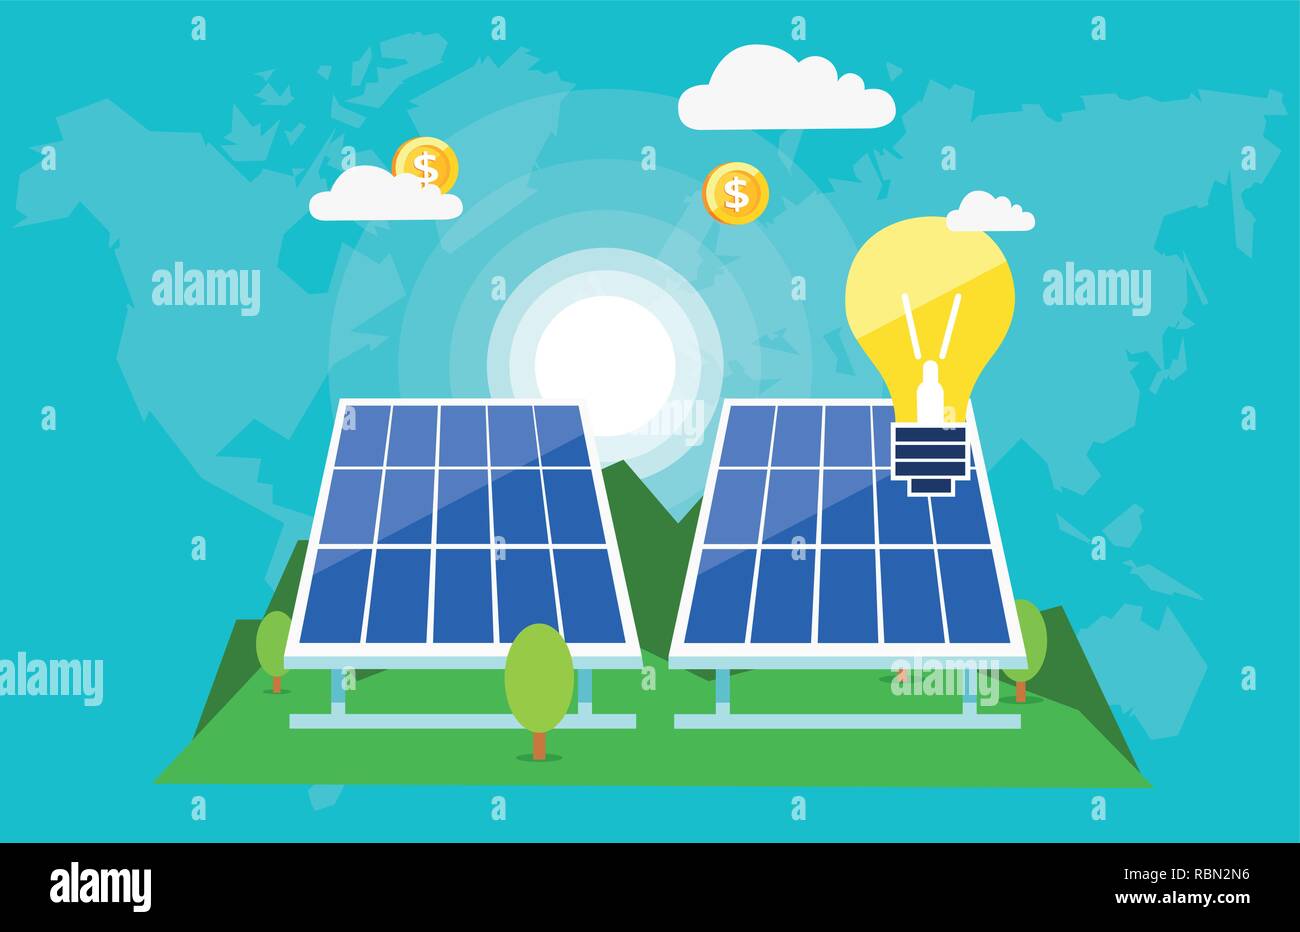 Kreative grafische Gestaltung von Solar Batterien mit brennenden Lampen und fliegende Dollar Münzen zeigen innovative grüne Welt Stock Vektor